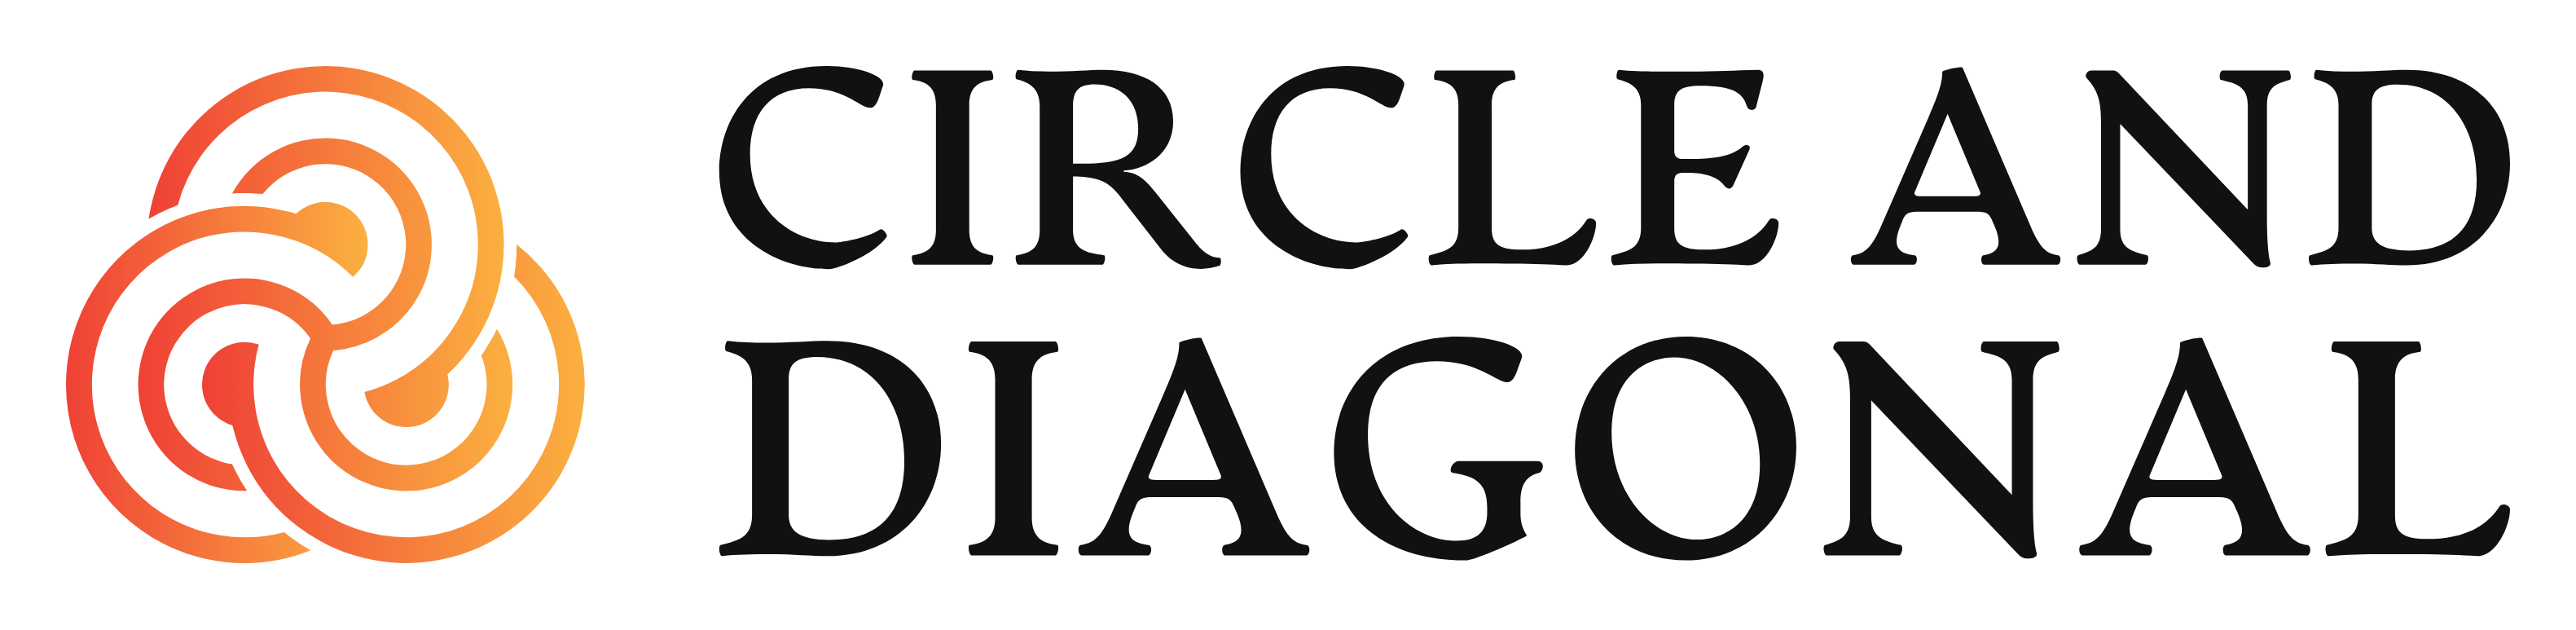 circleanddiagonal.com